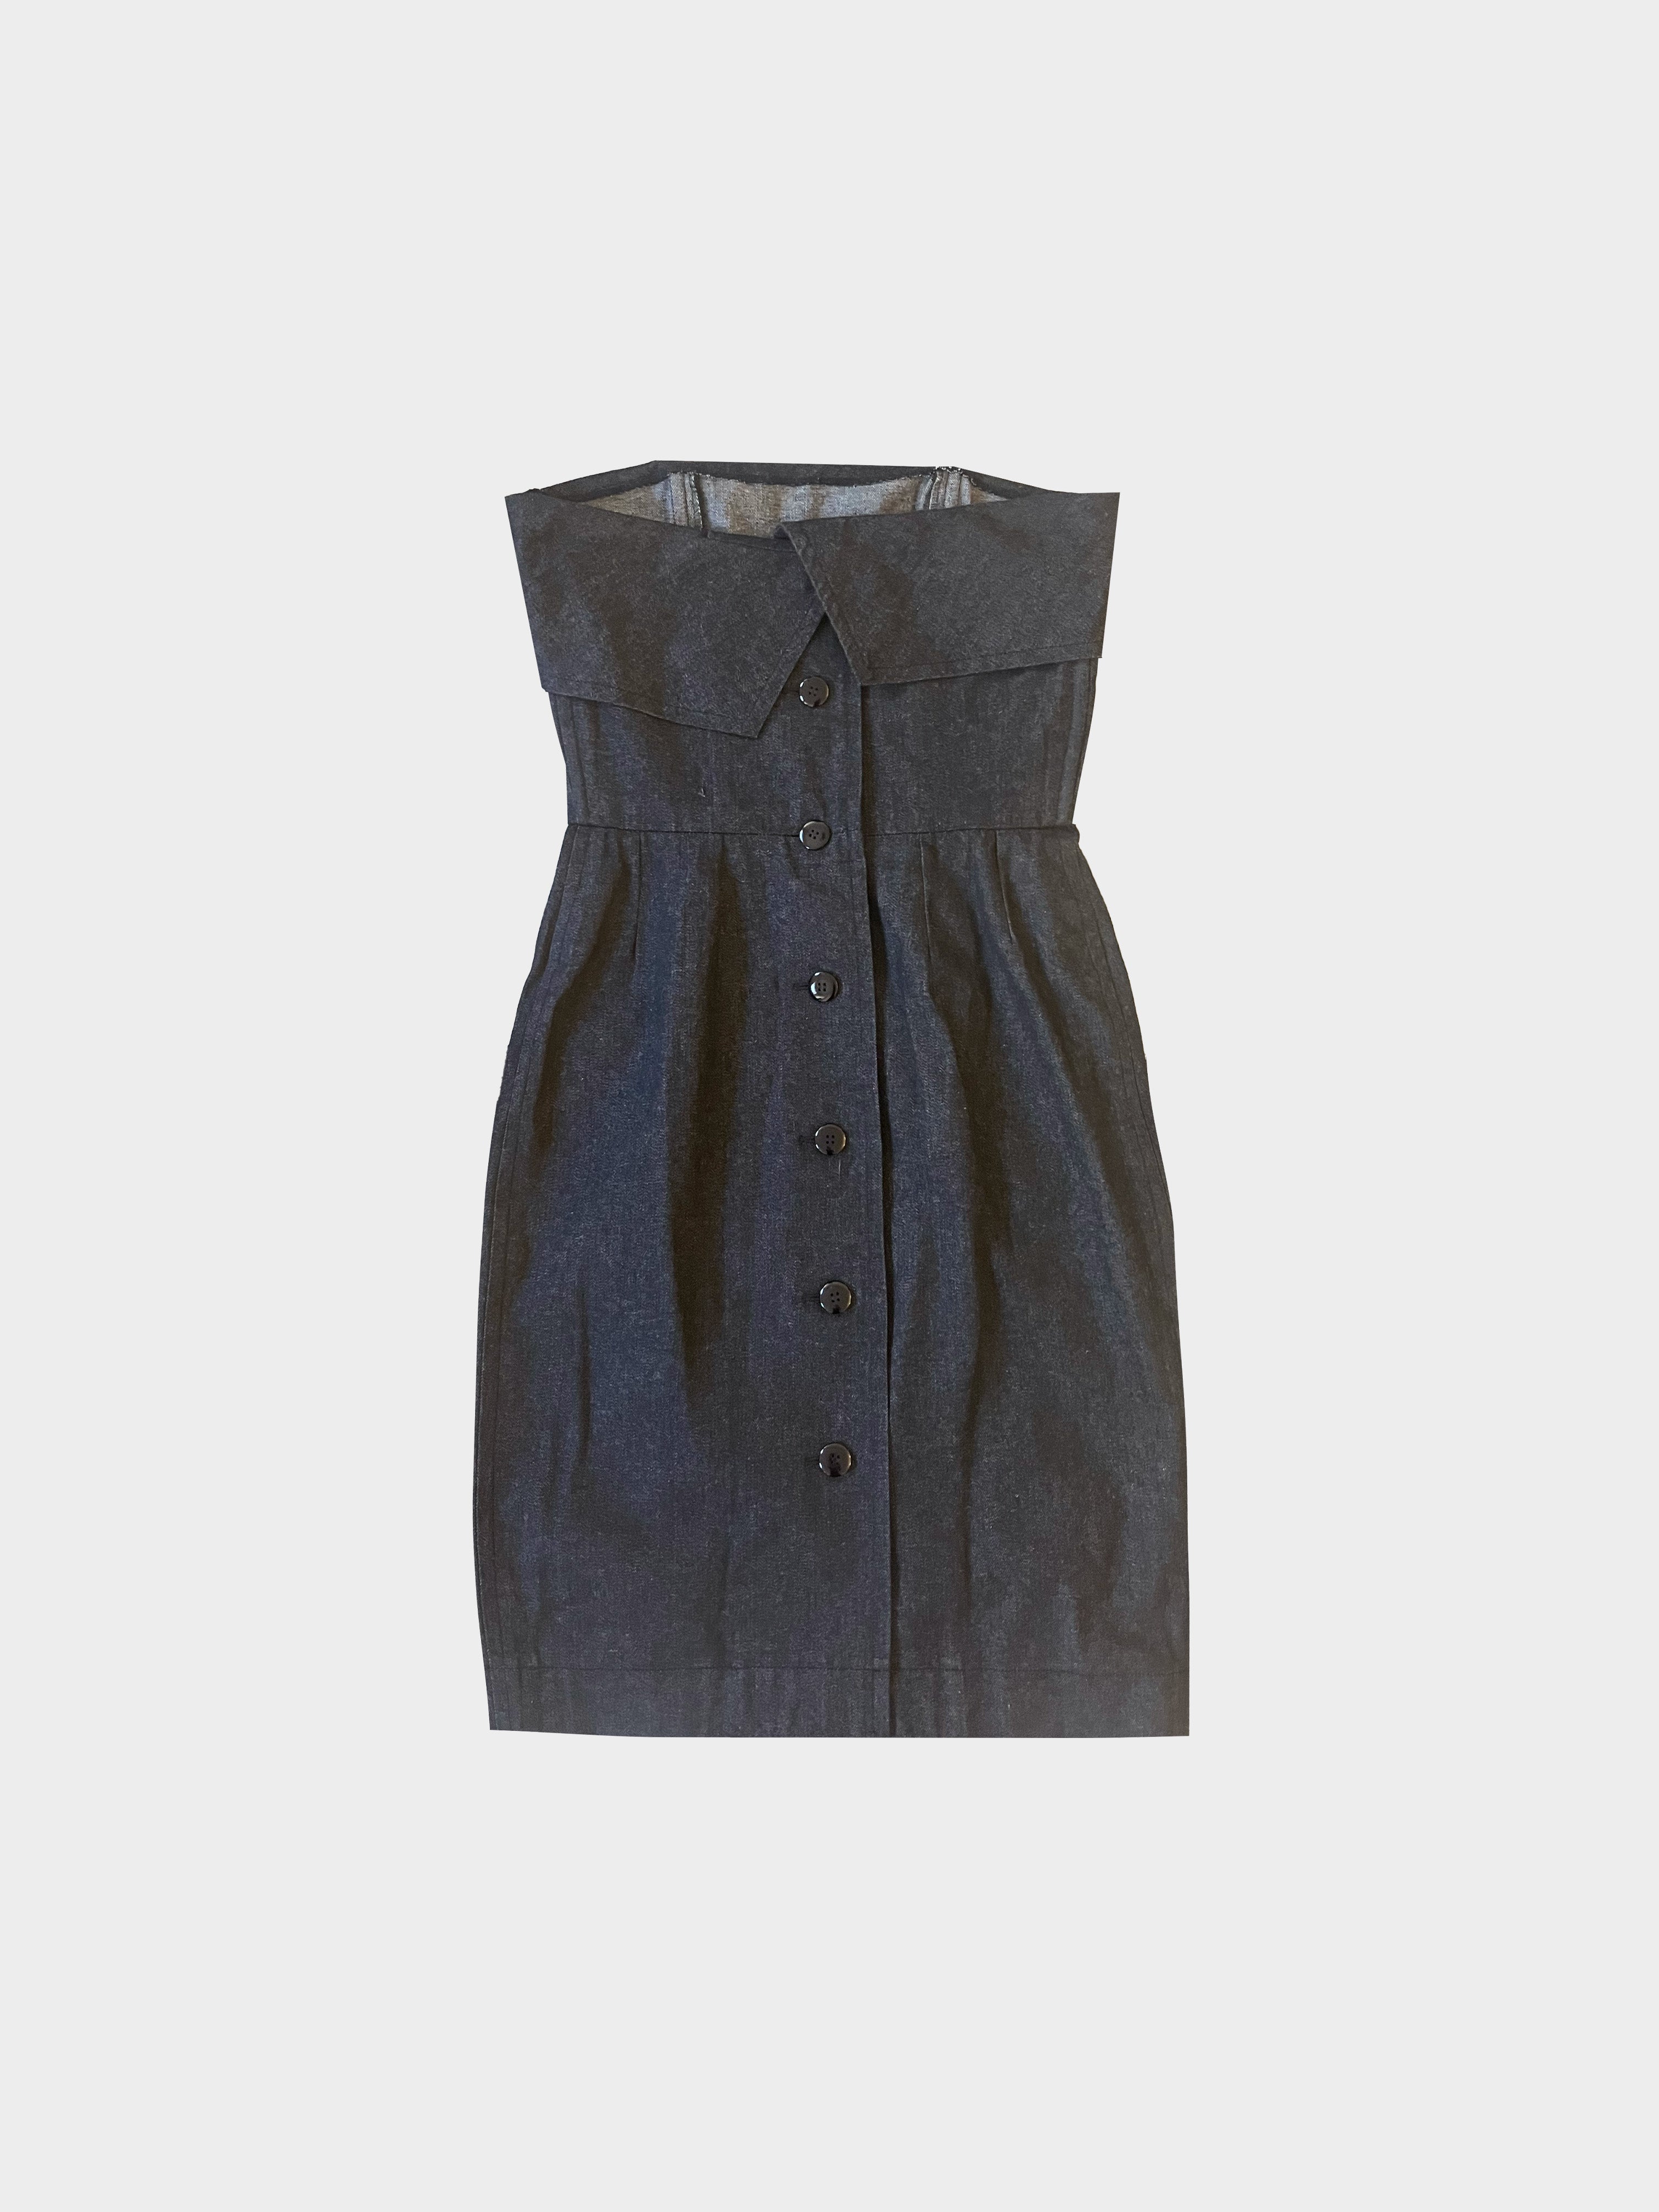 Yves Saint Laurent SS 1987 Strapless Denim Dress